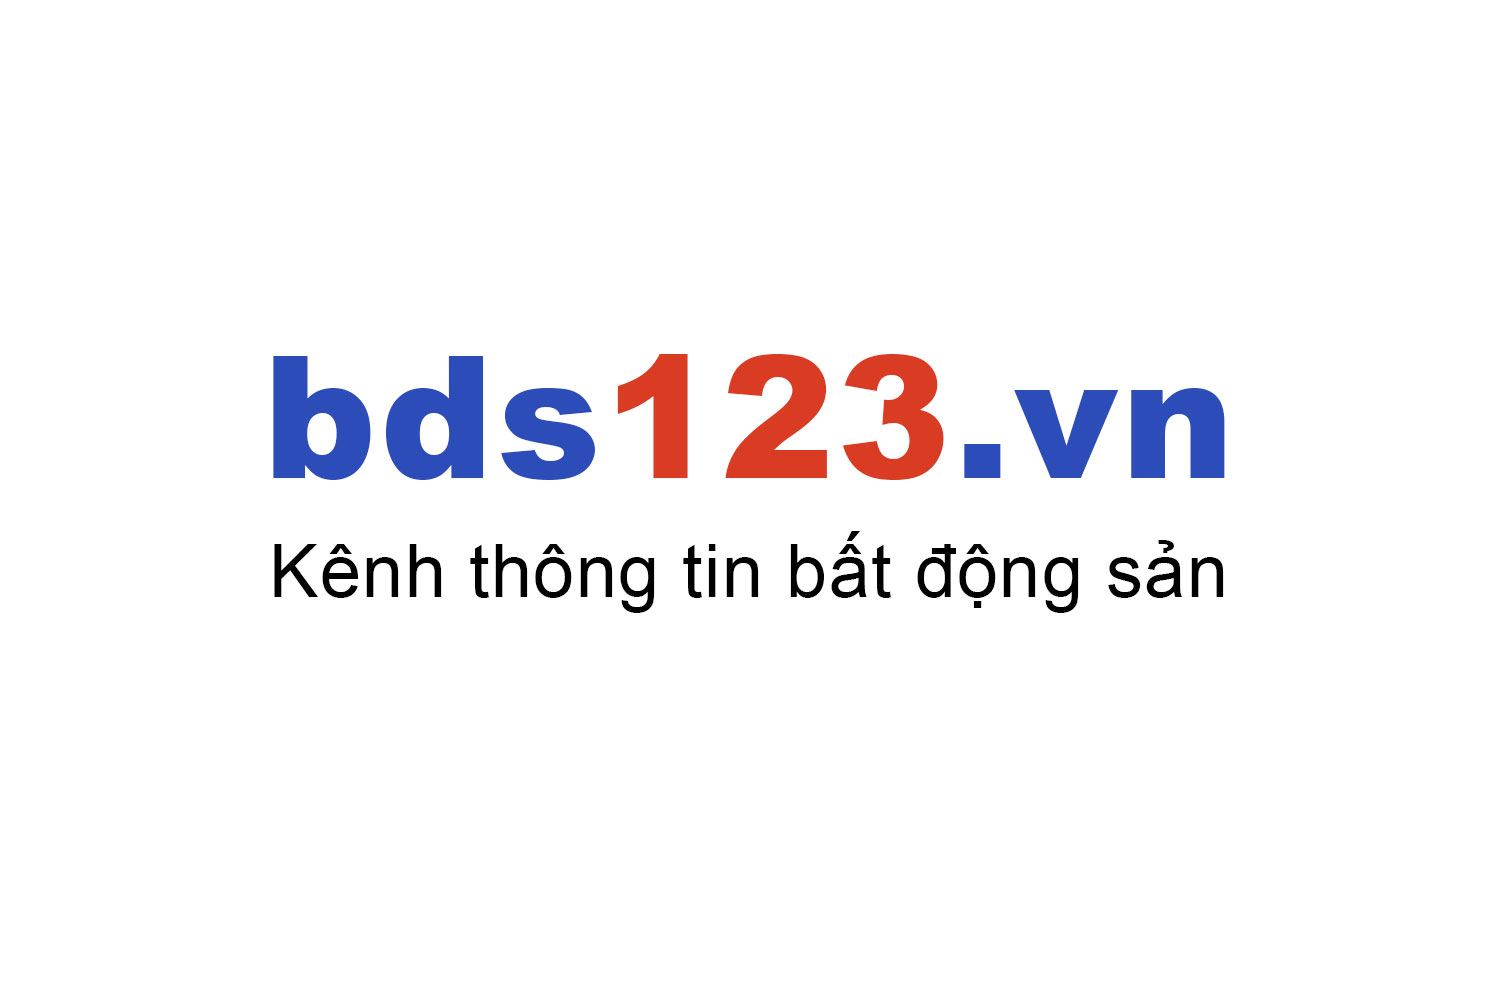 Mua bán căn hộ TDH Phước Bình ưu đãi giá tốt T10/2022 - Bds123.vn